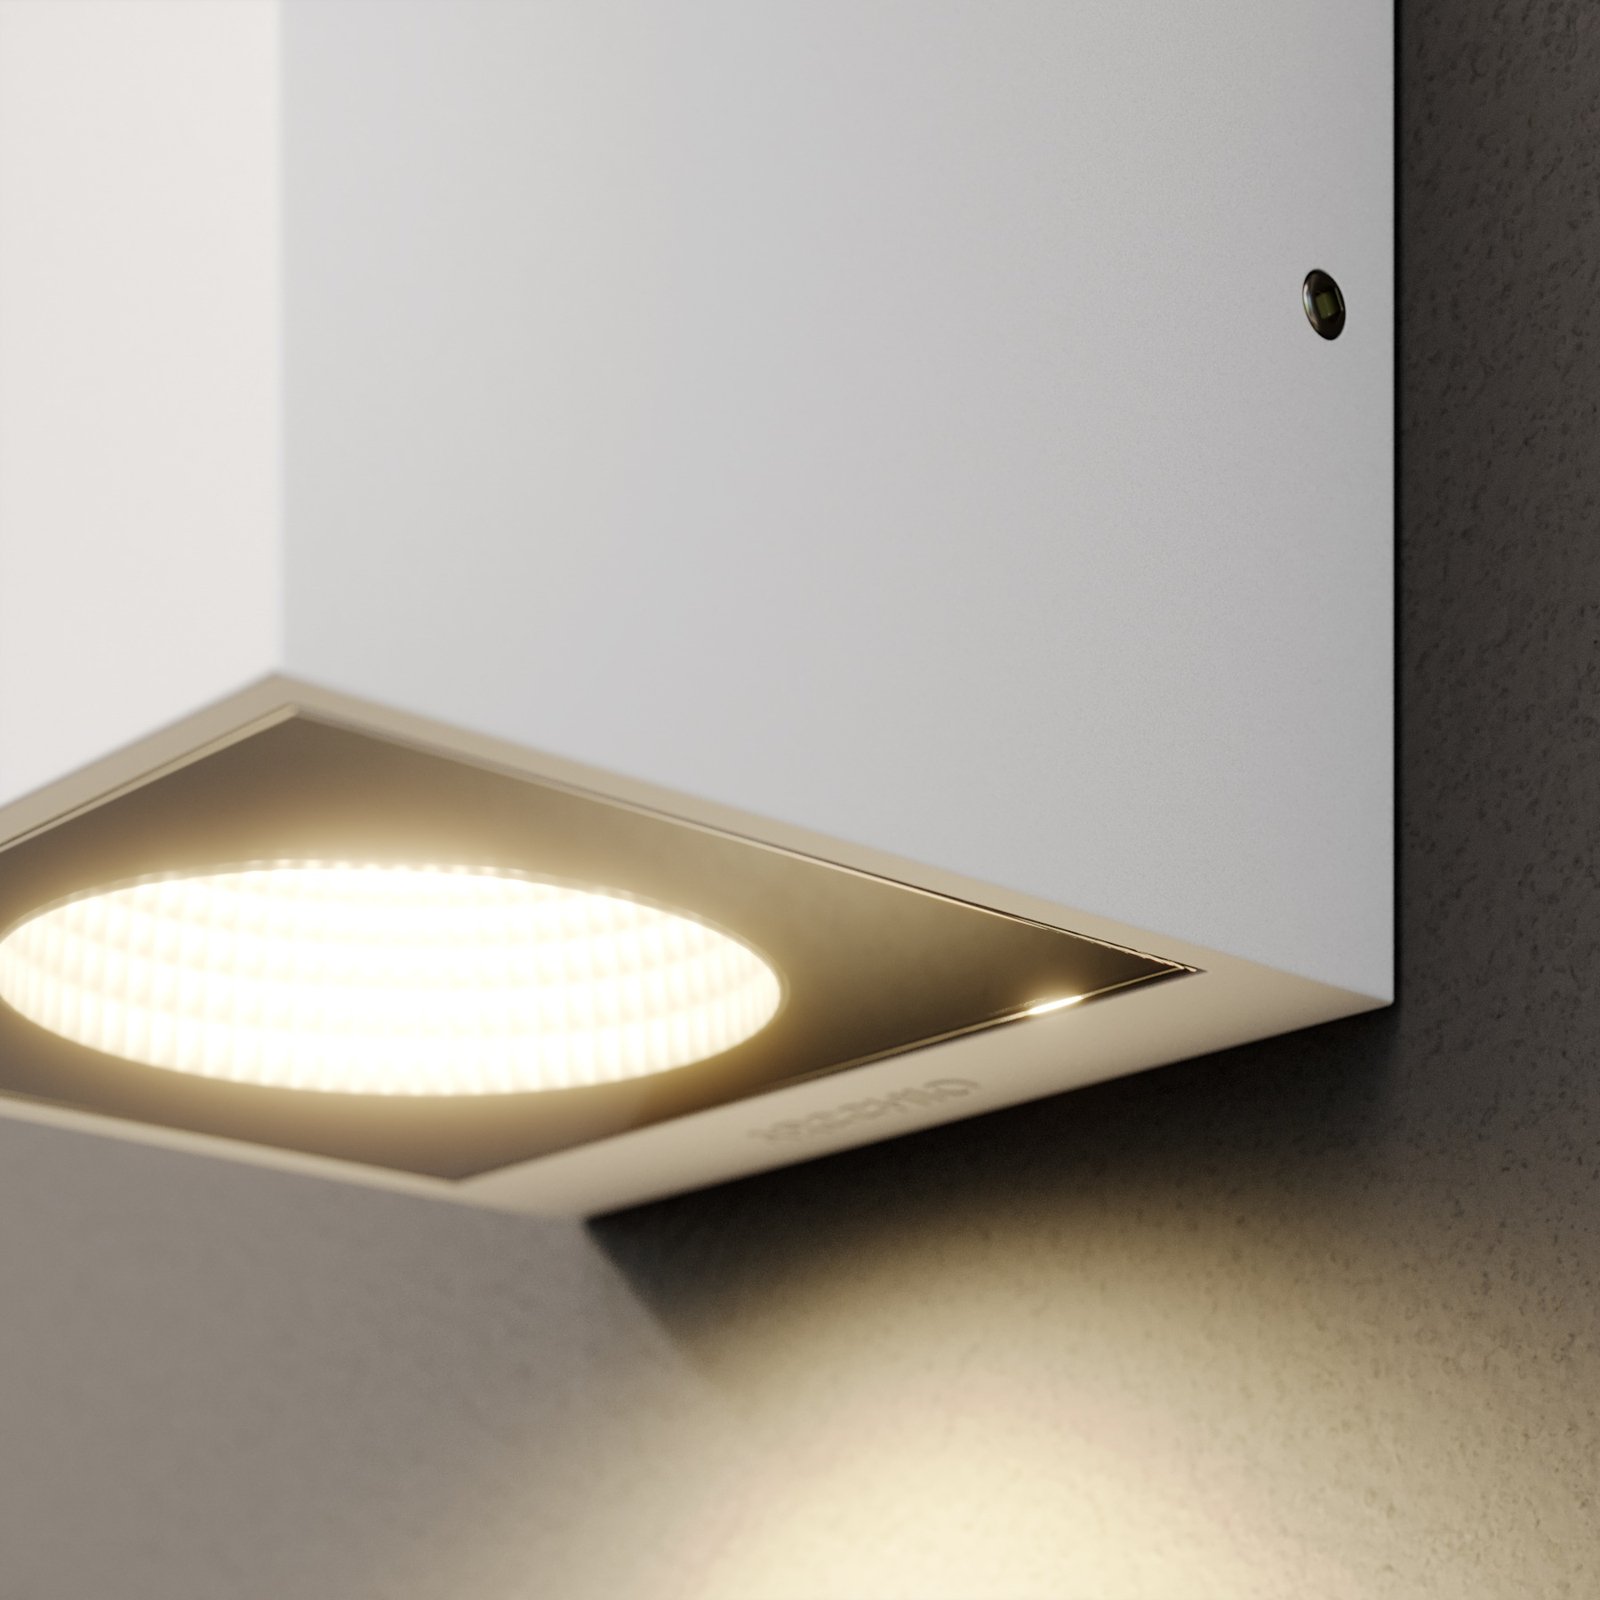 Arcchio Tassnim LED buitenwandlamp wit 1-lamp.